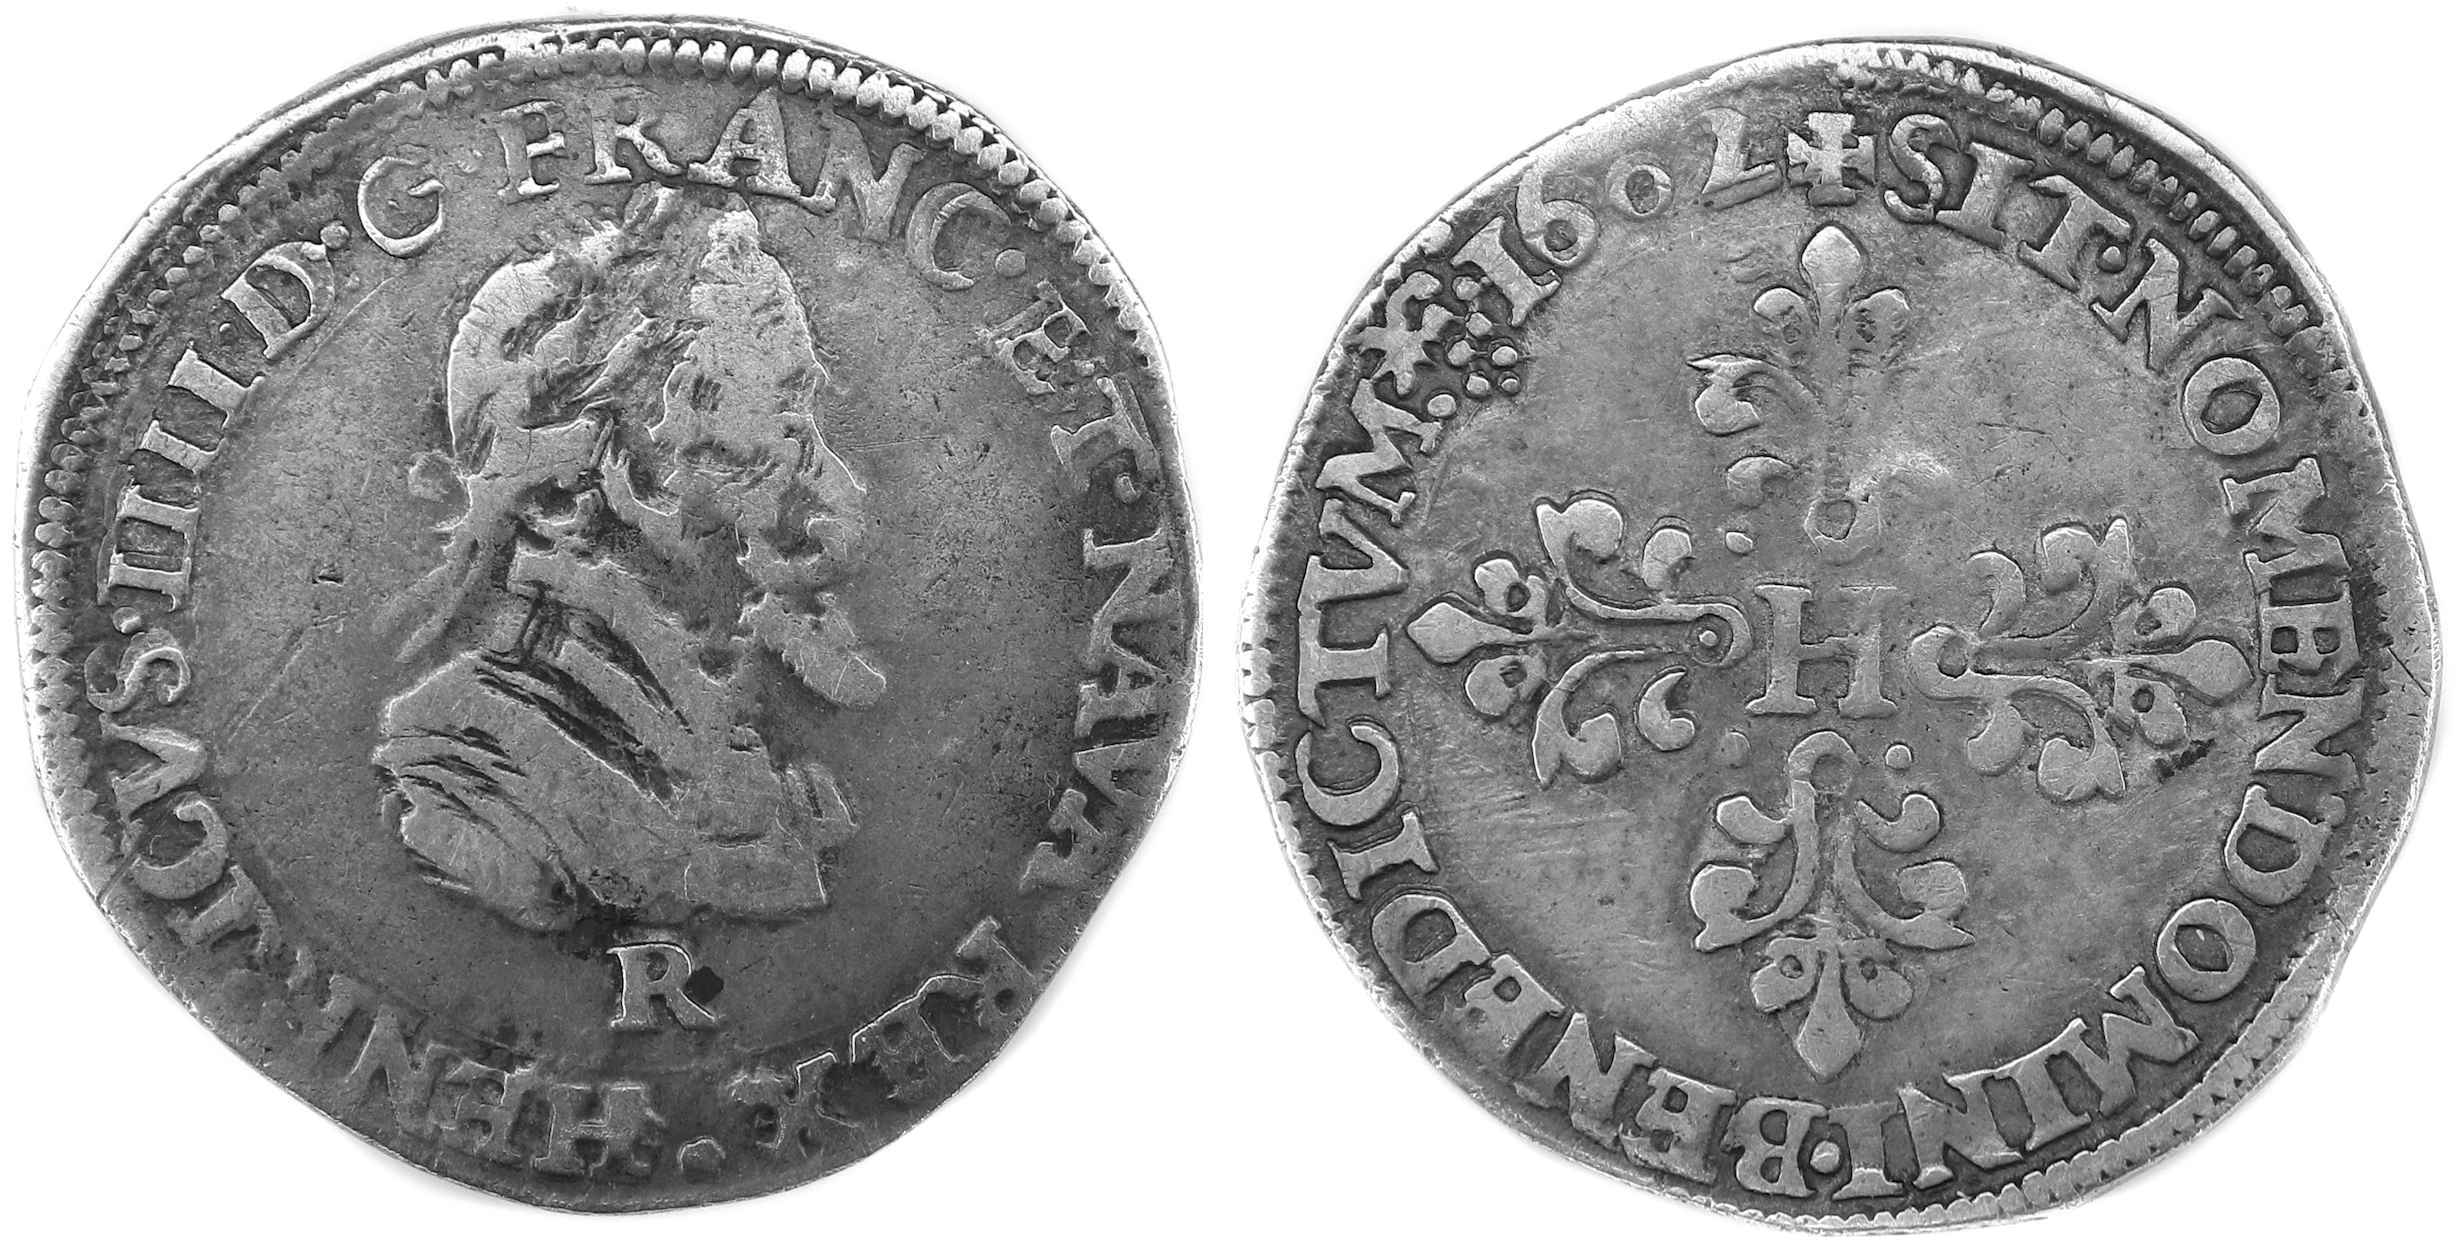 Monnaies royales francaises HENRI IV DEMI FRANC 1602 VILLENEUVE ST ANDRE